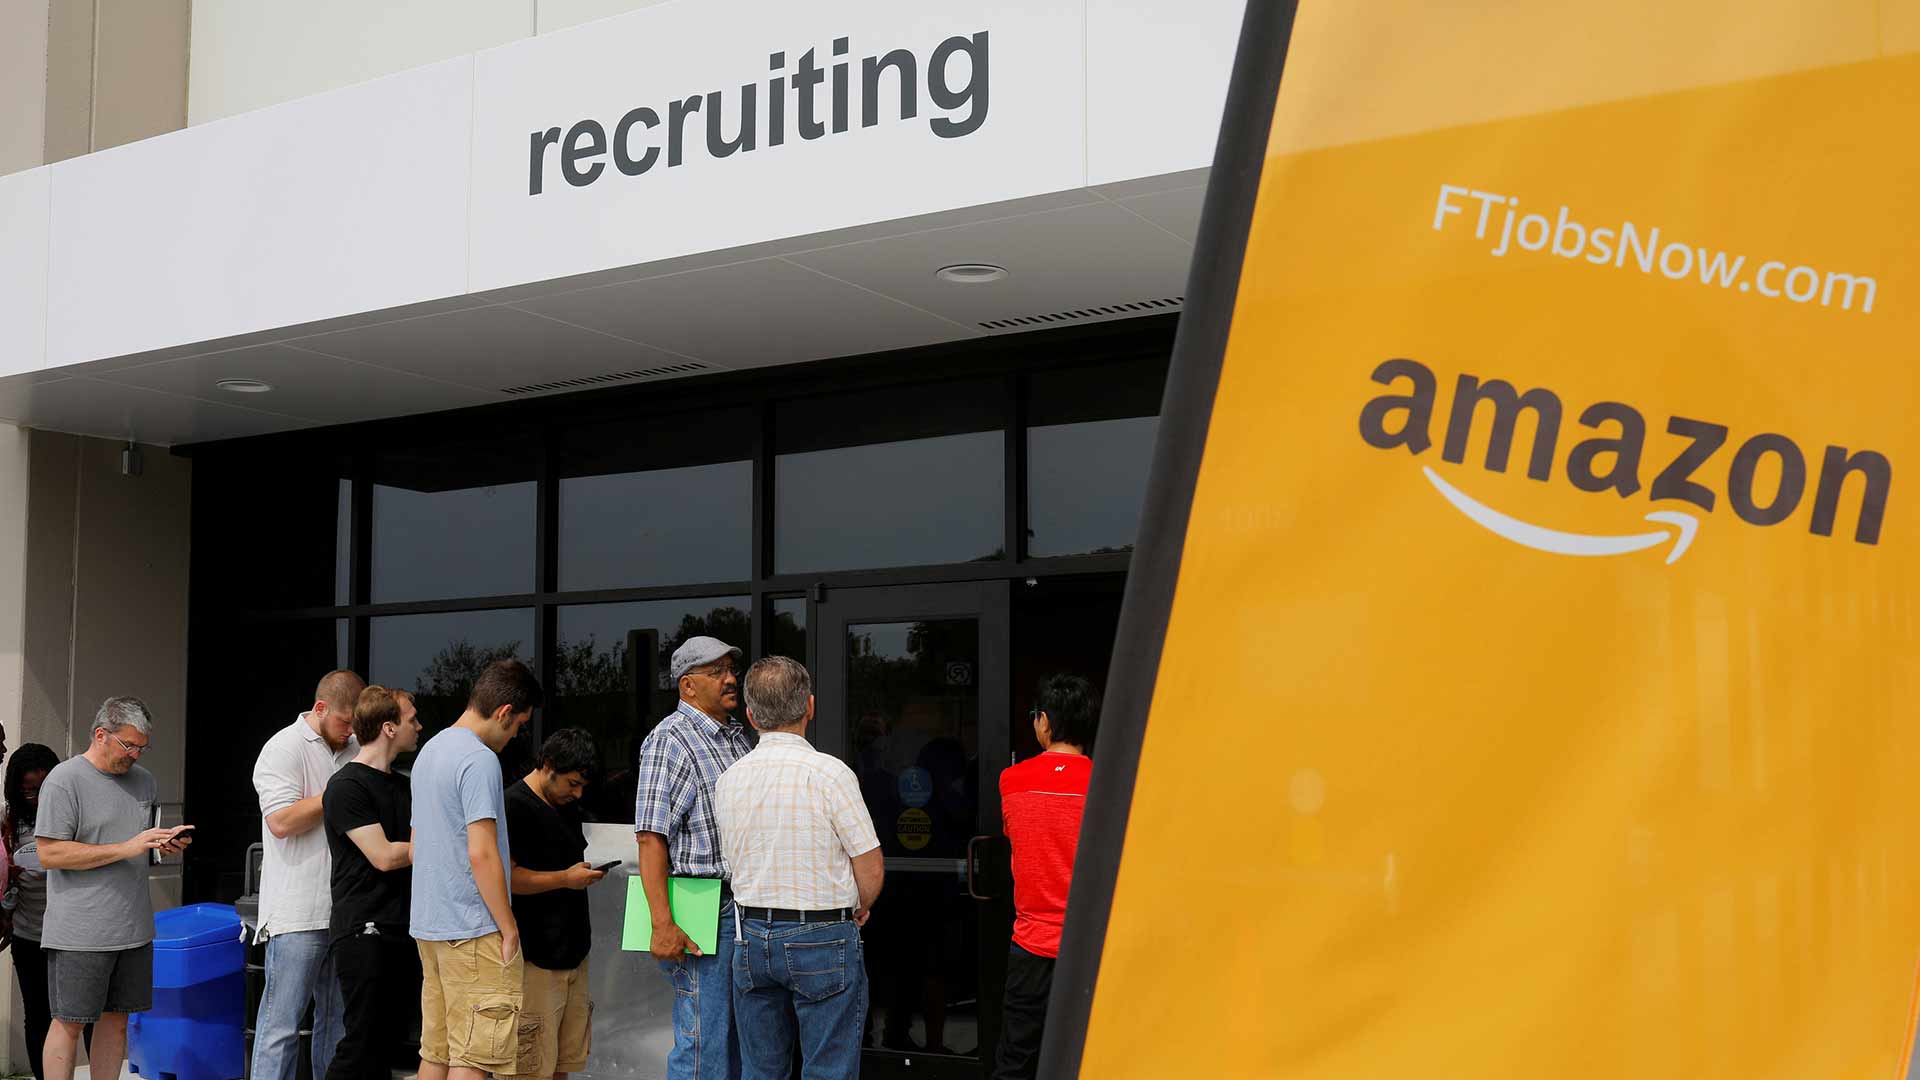 Amazon descarta su algoritmo de reclutamiento por sexista